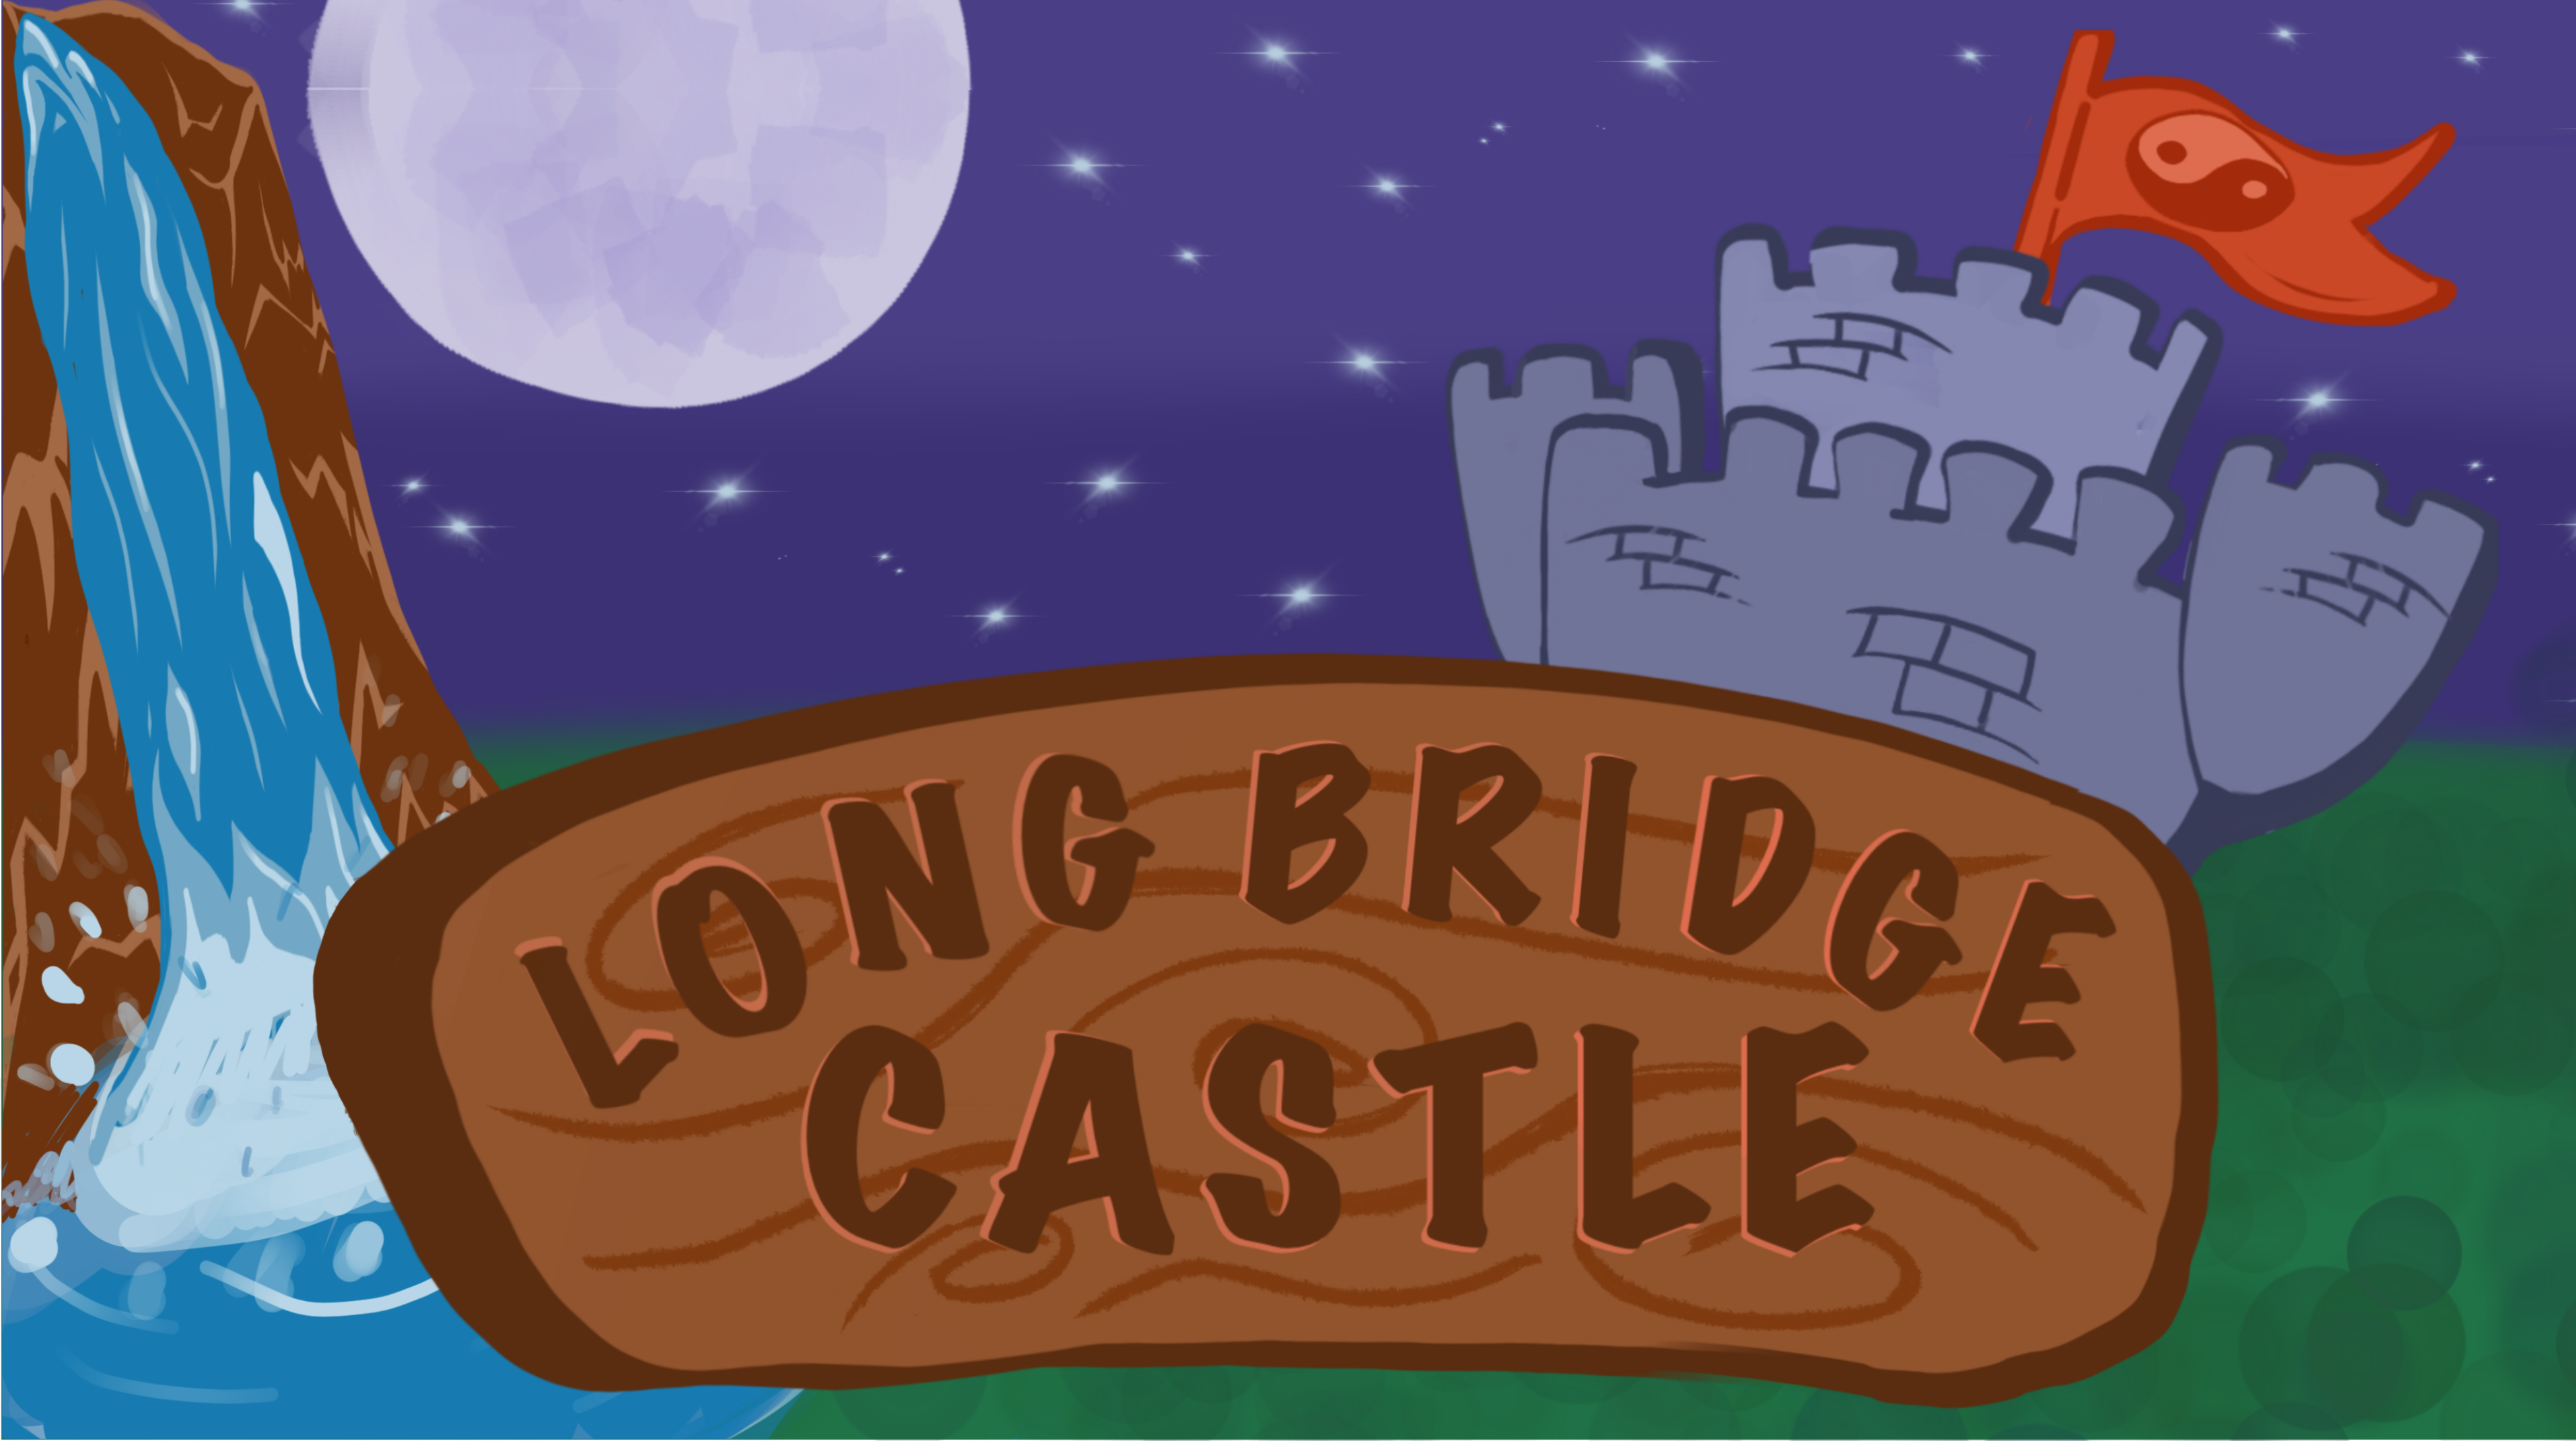 Long Bridge Castle